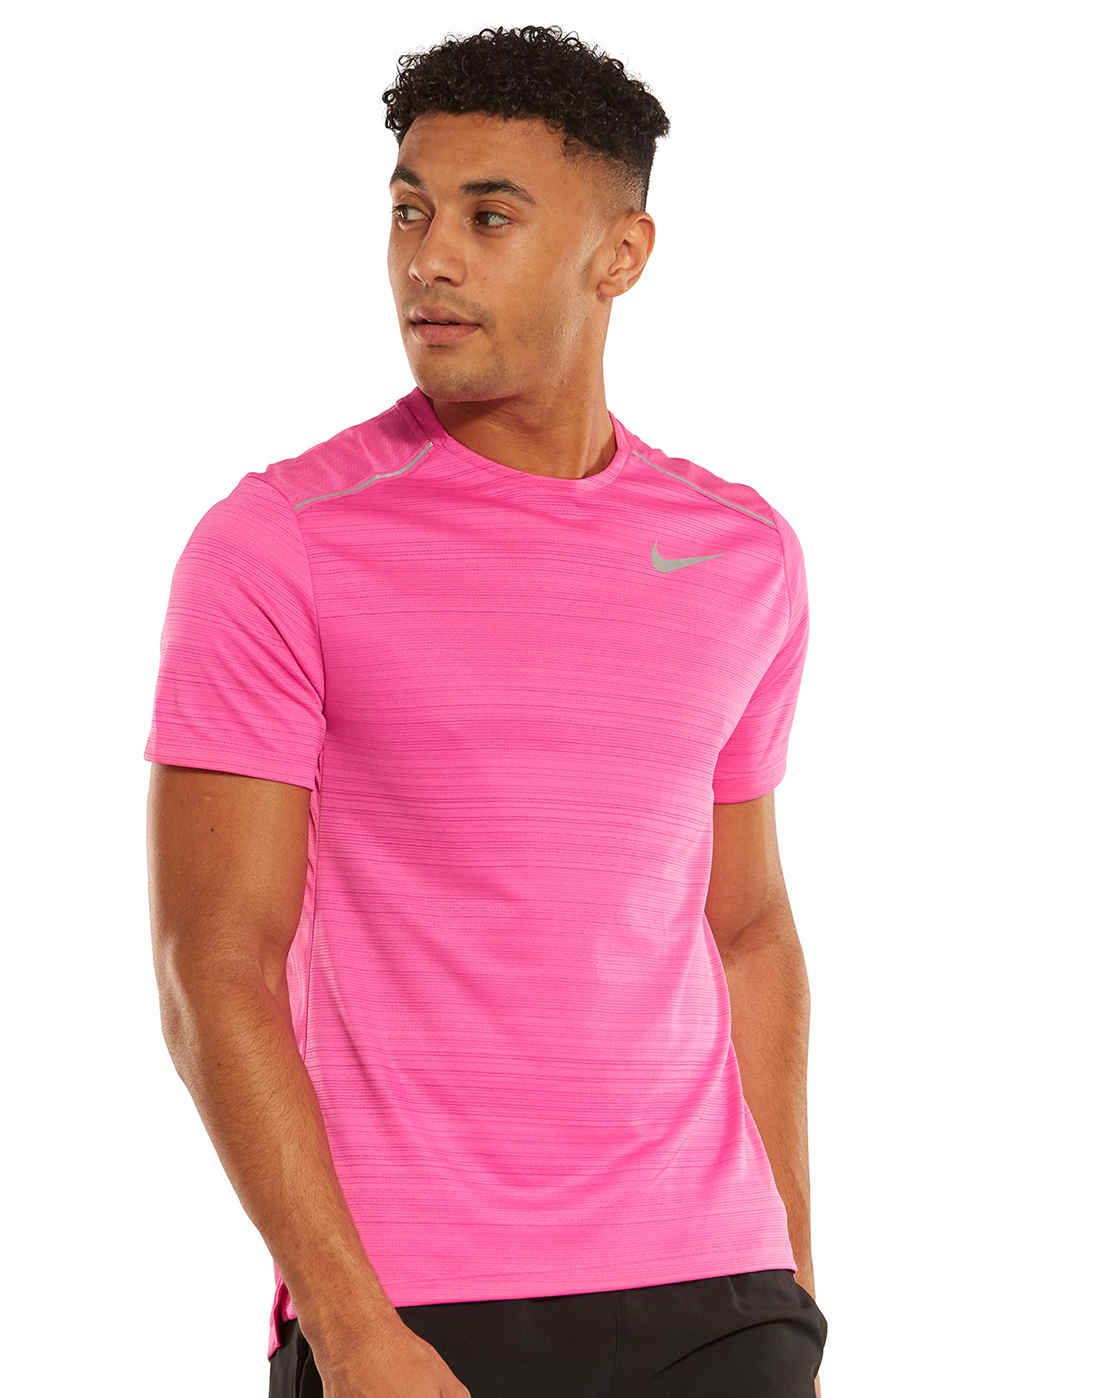 Nike Mens Dry Miler T-Shirt - Pink 